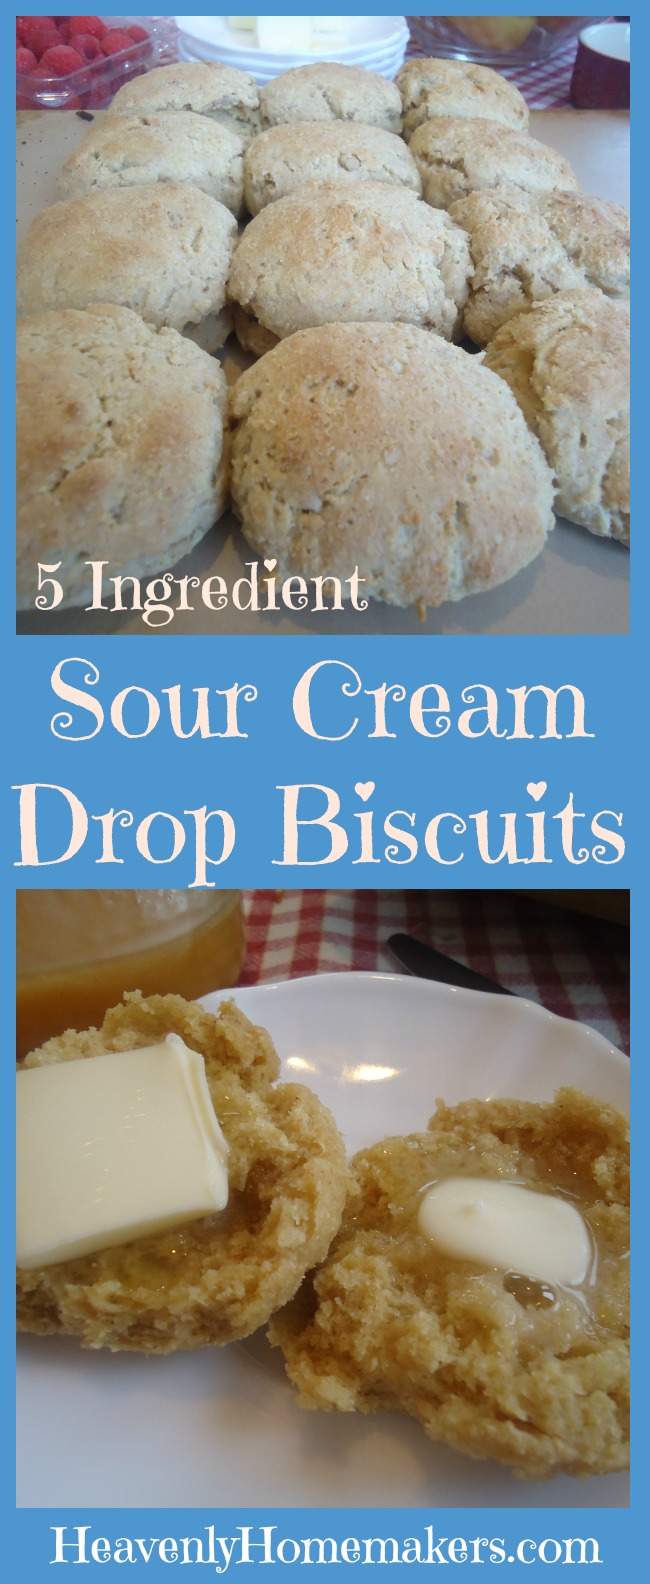 5 Ingredient Sour Cream Drop Biscuits